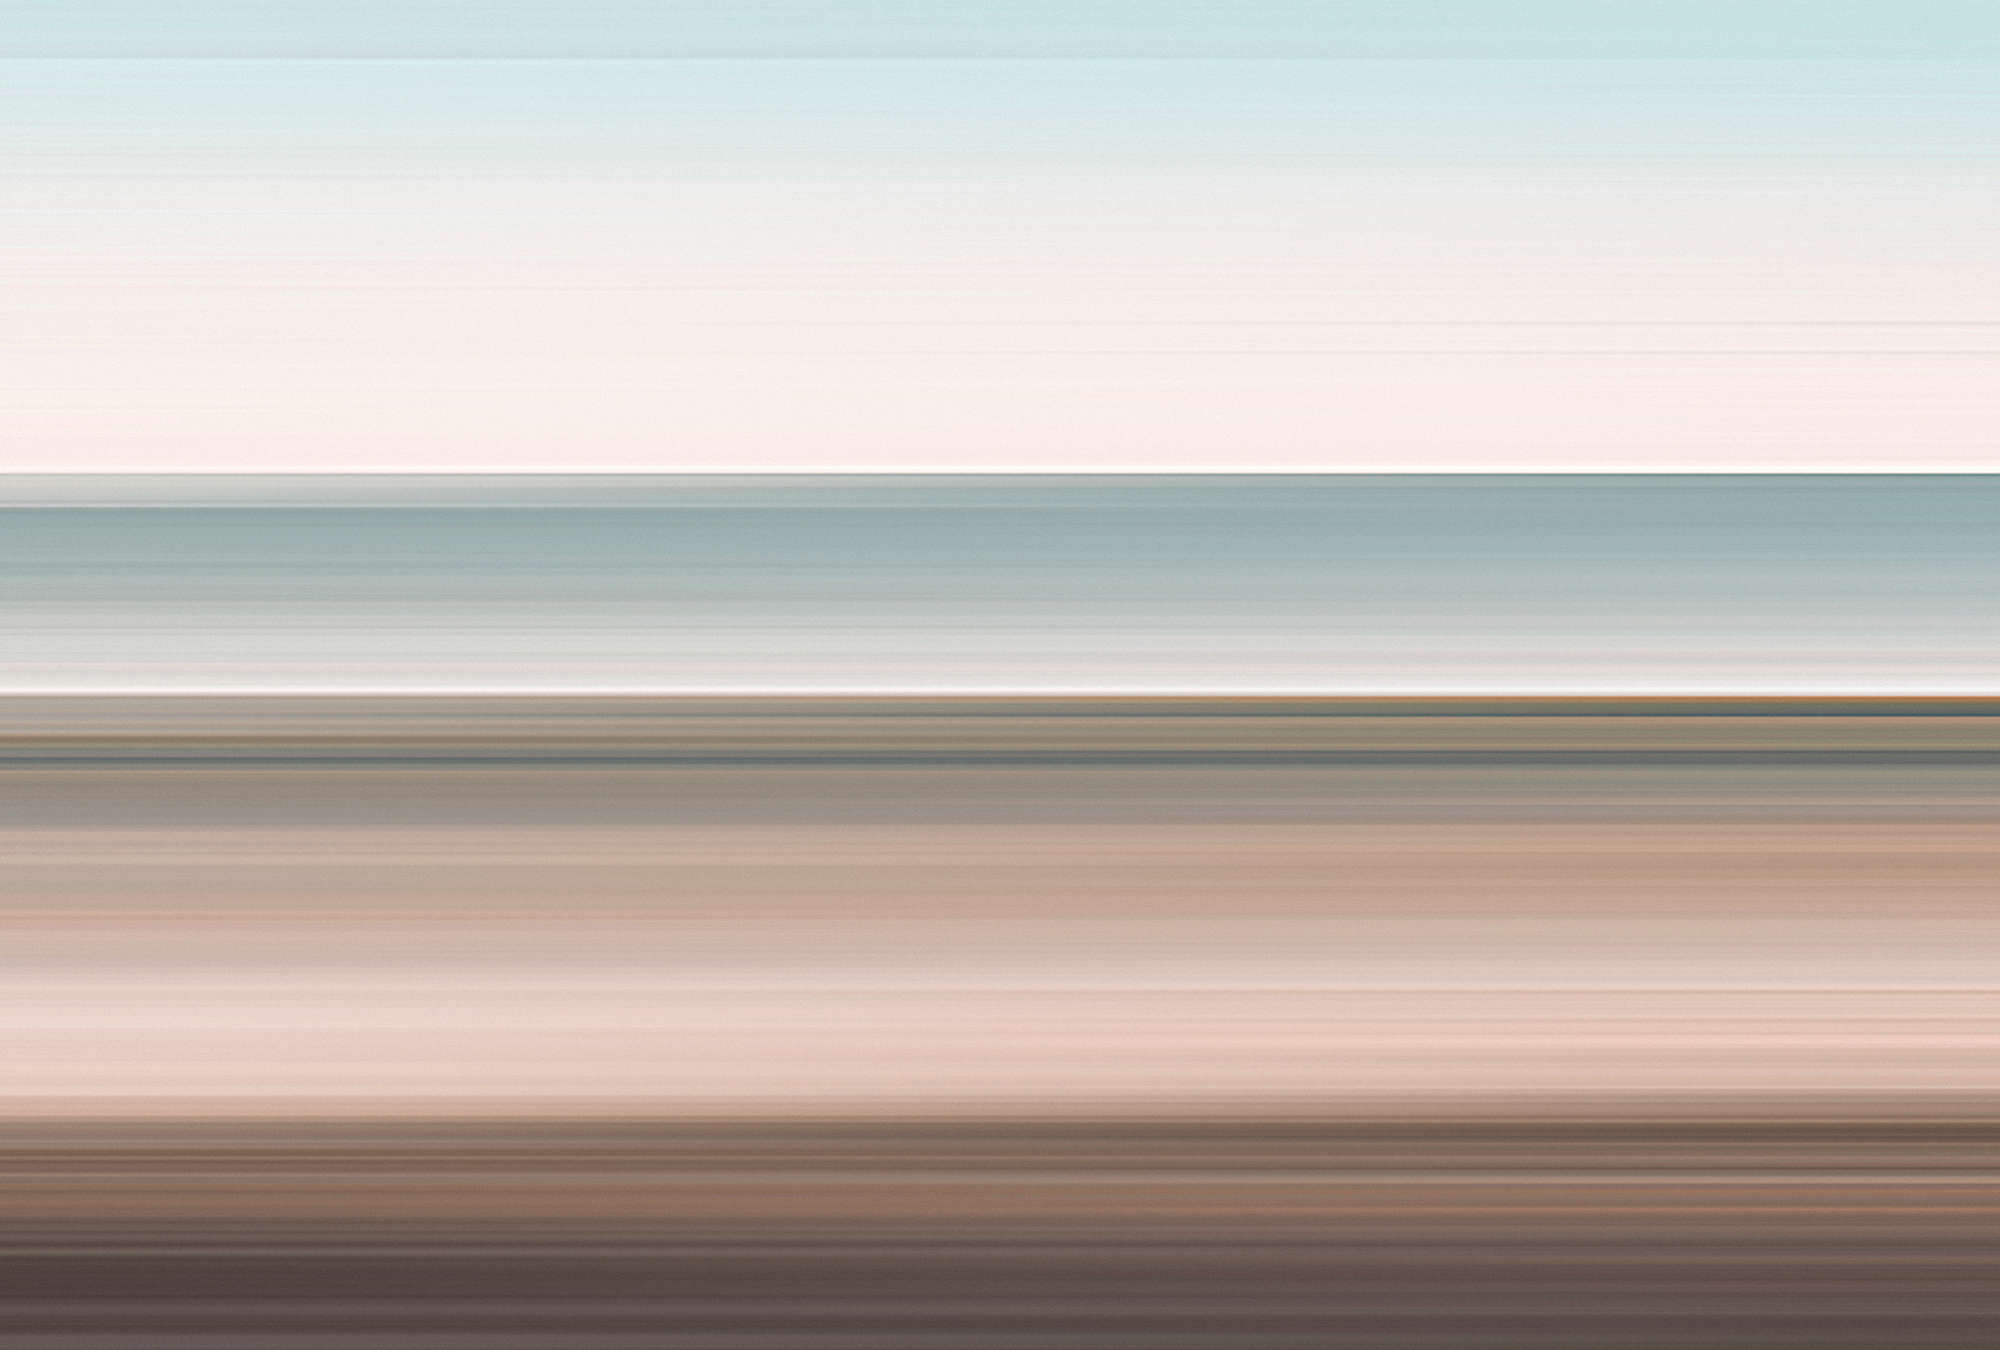             Horizon 2 - Papier peint paysage abstrait avec design de lignes
        